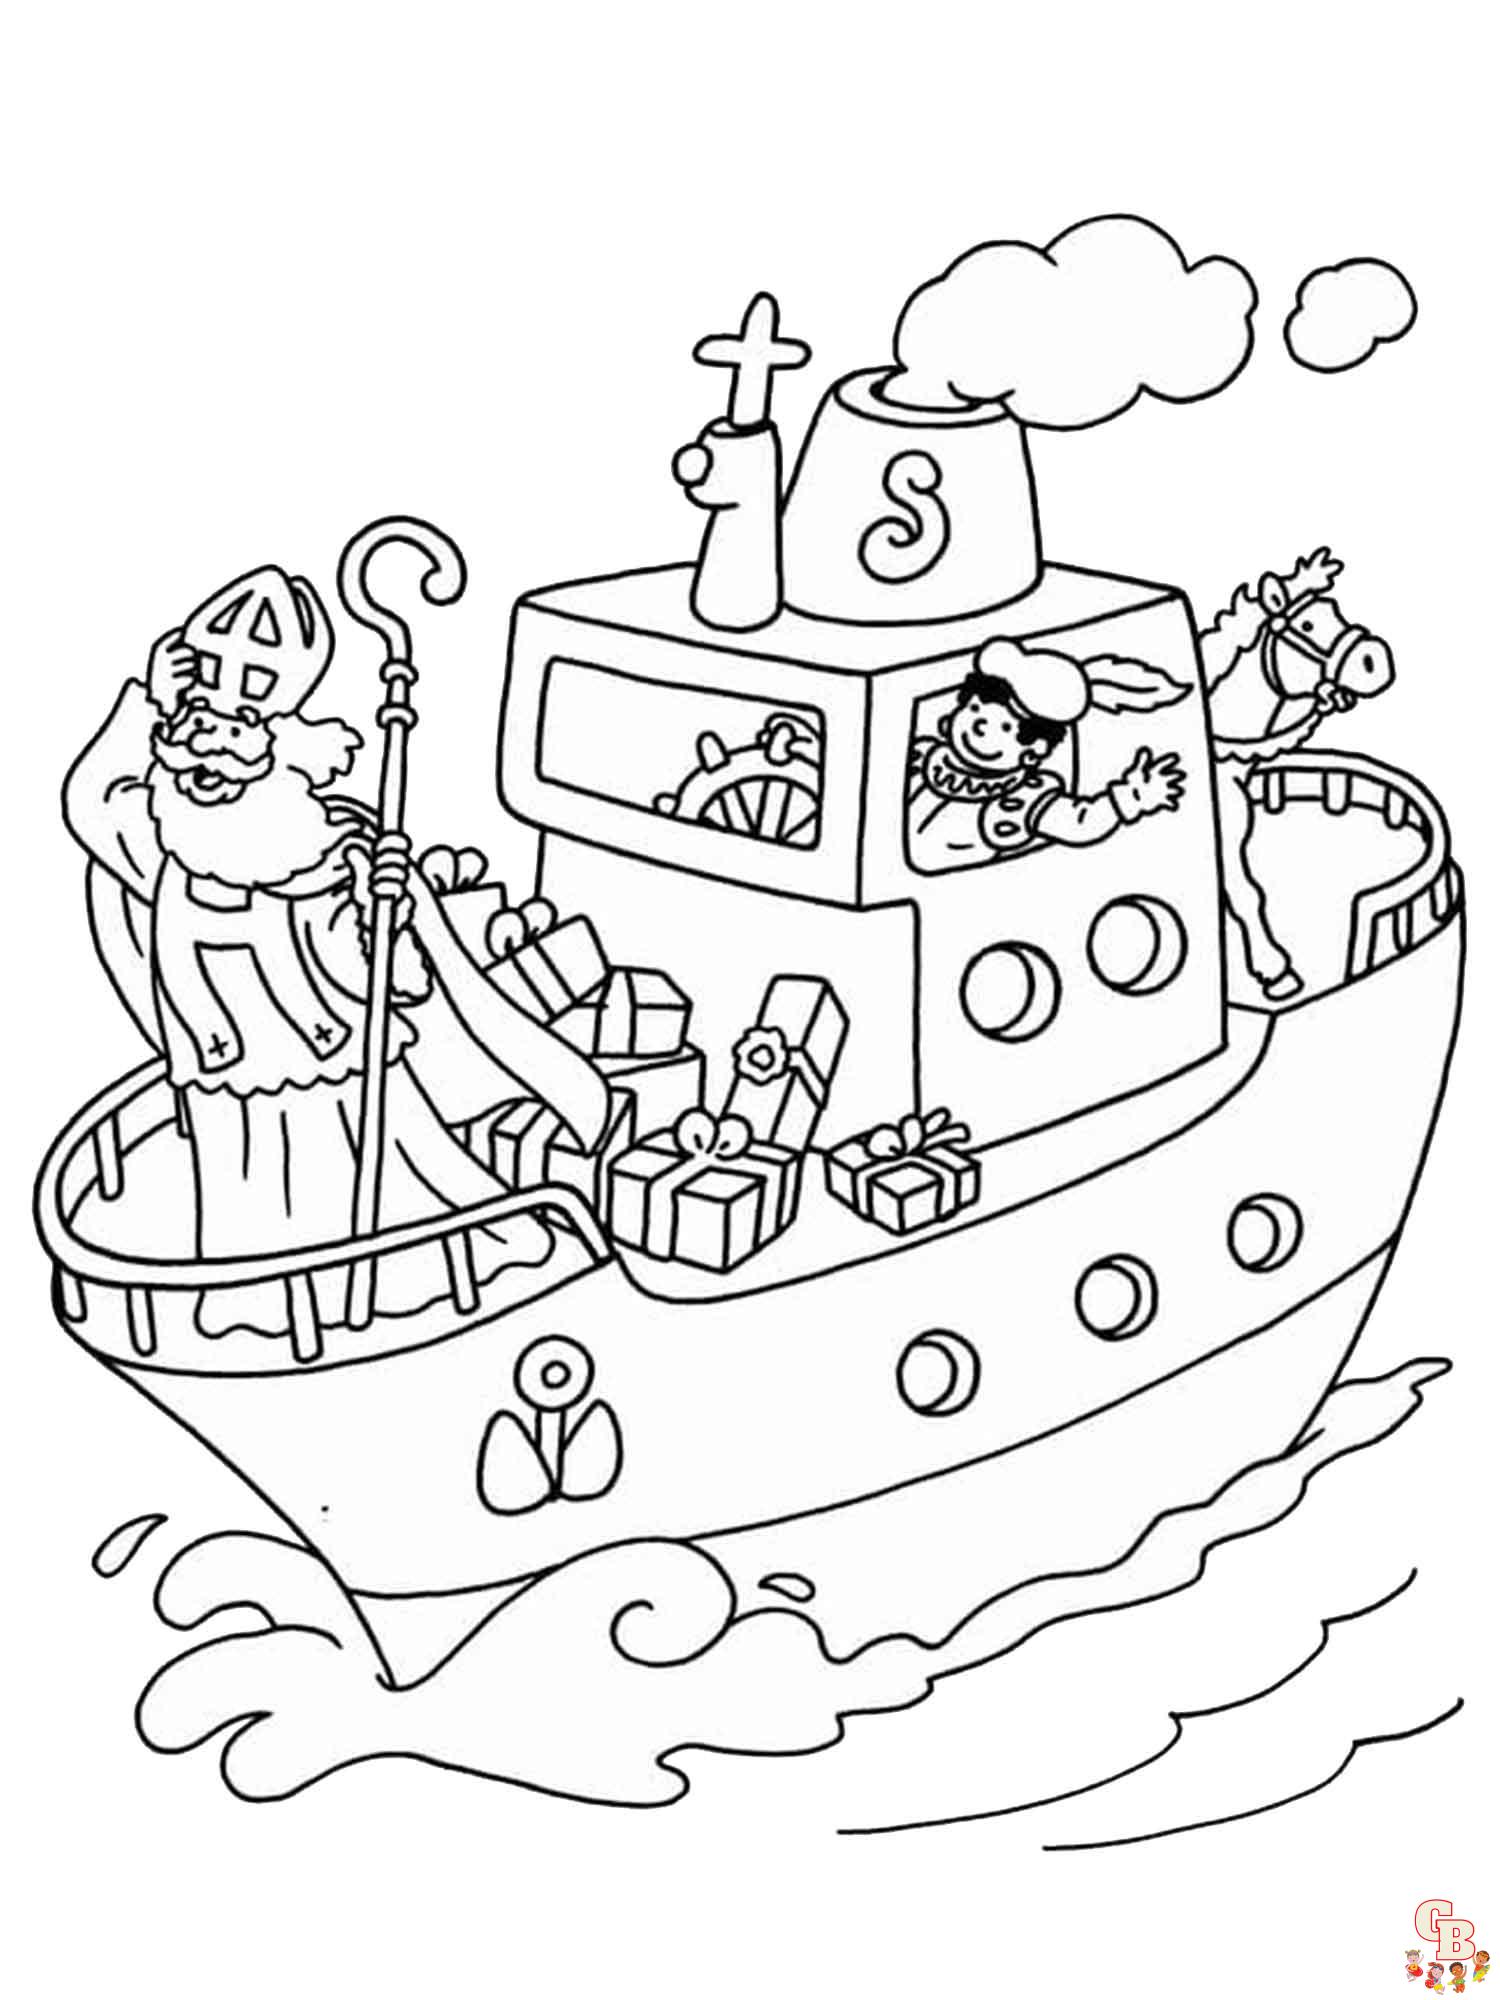 Sinterklaas Stoomboot Kleurplaat 9